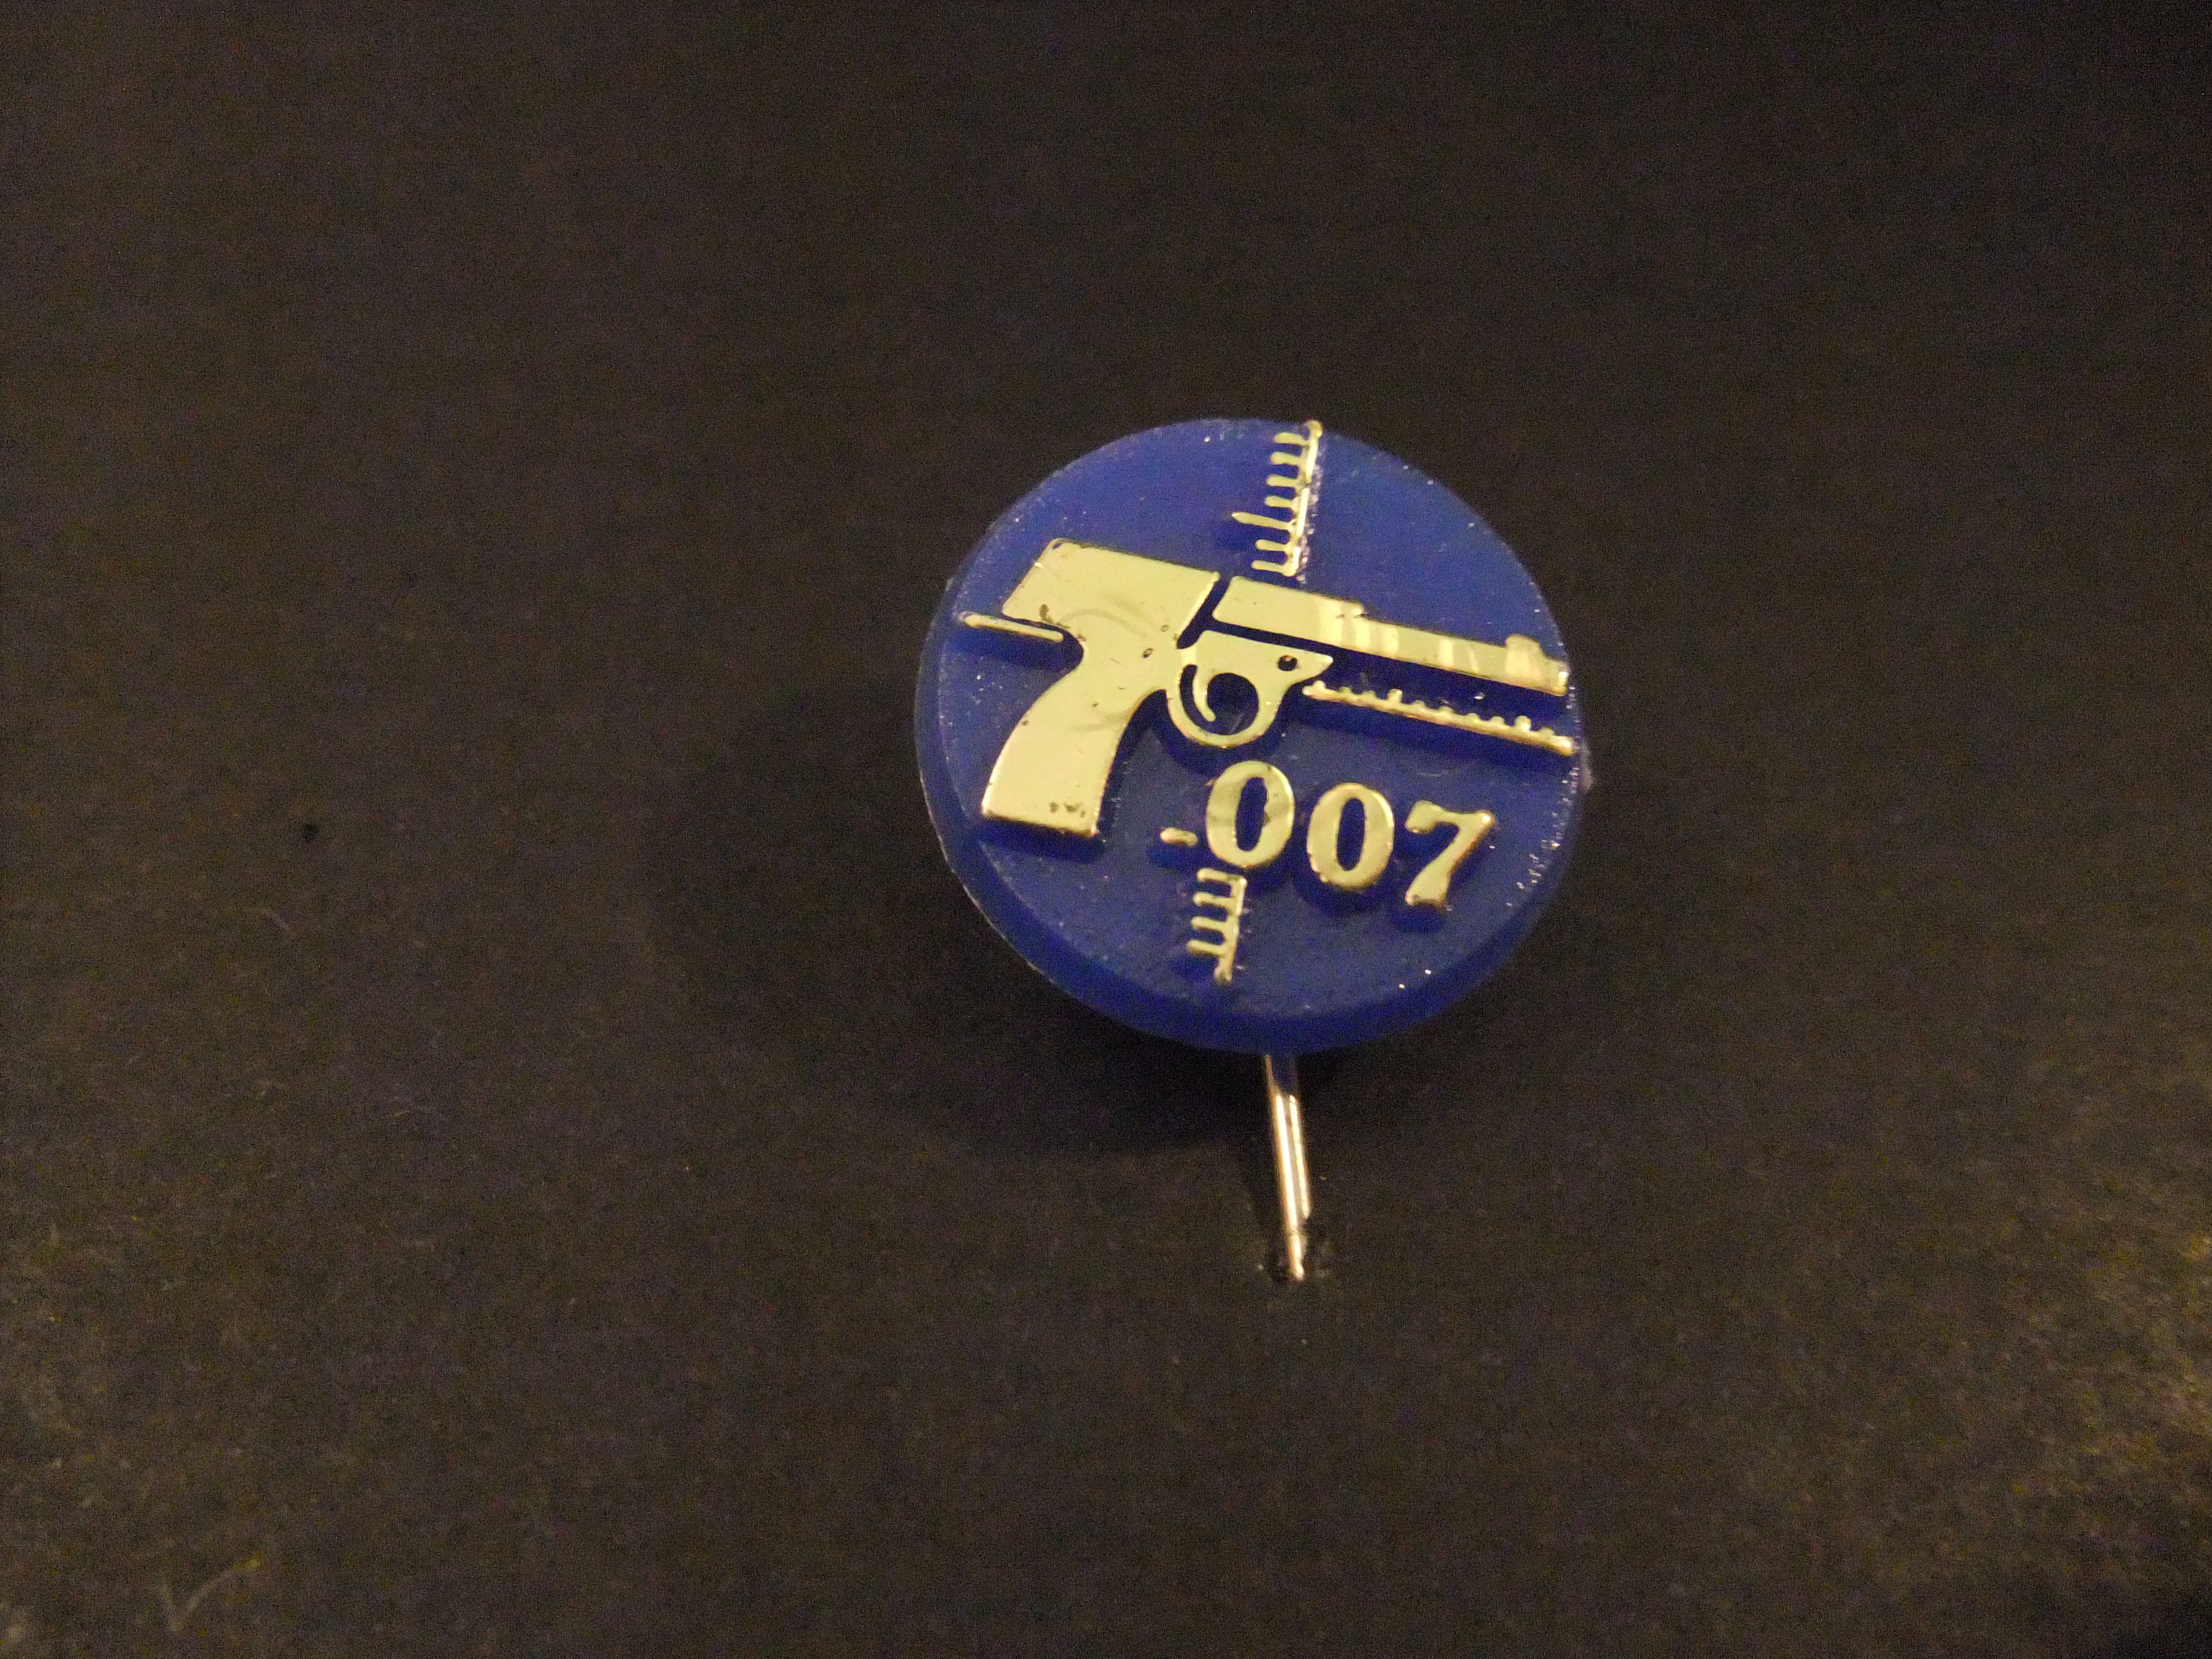 James Bond (geheim agent OO7) blauw-goudkleurig pistool